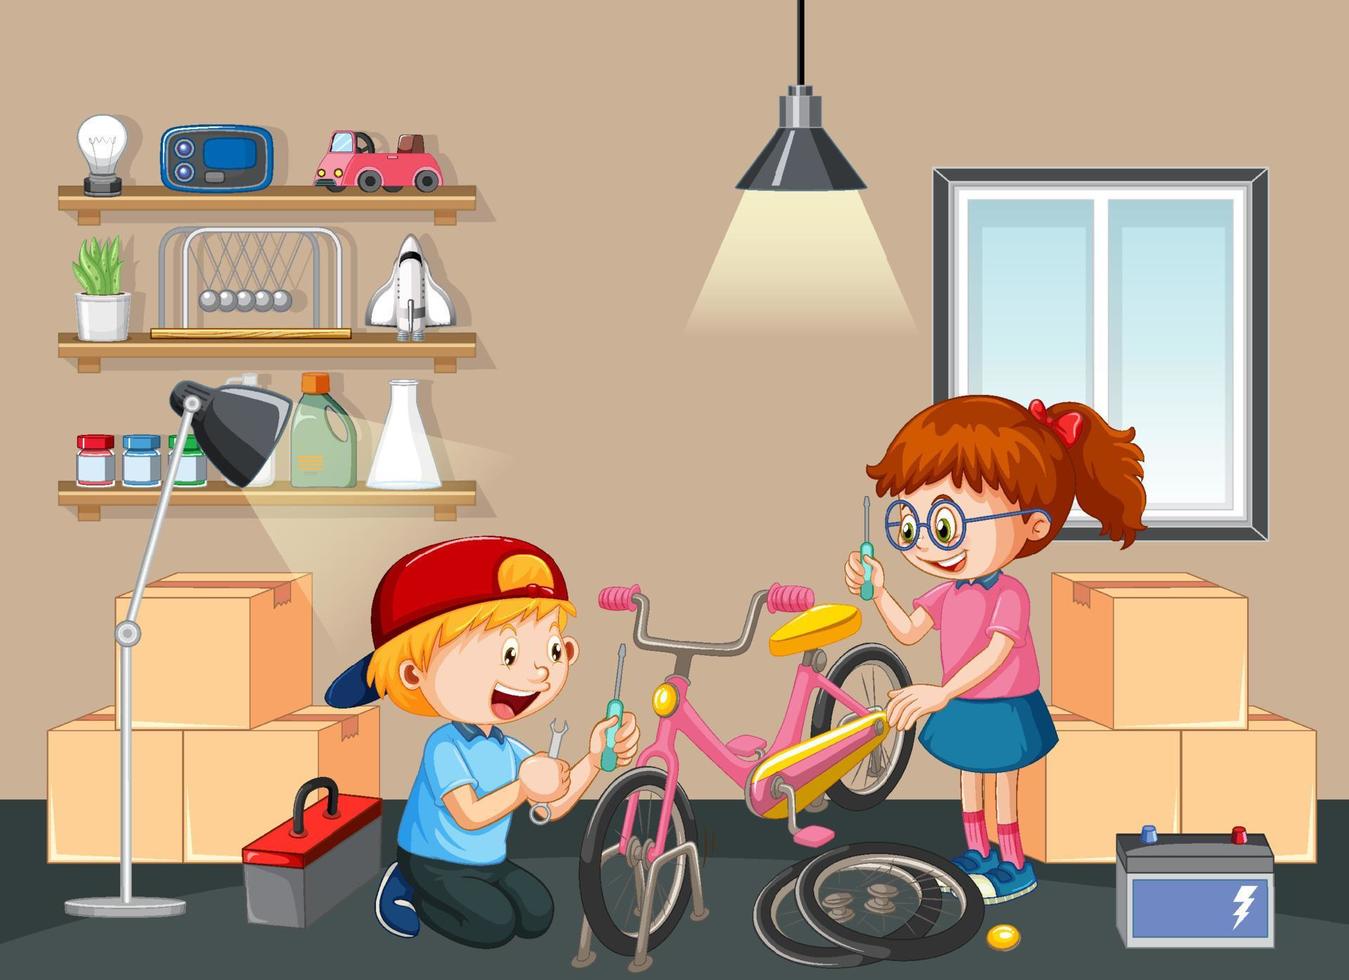 niños arreglando una bicicleta juntos en la escena de la habitación vector